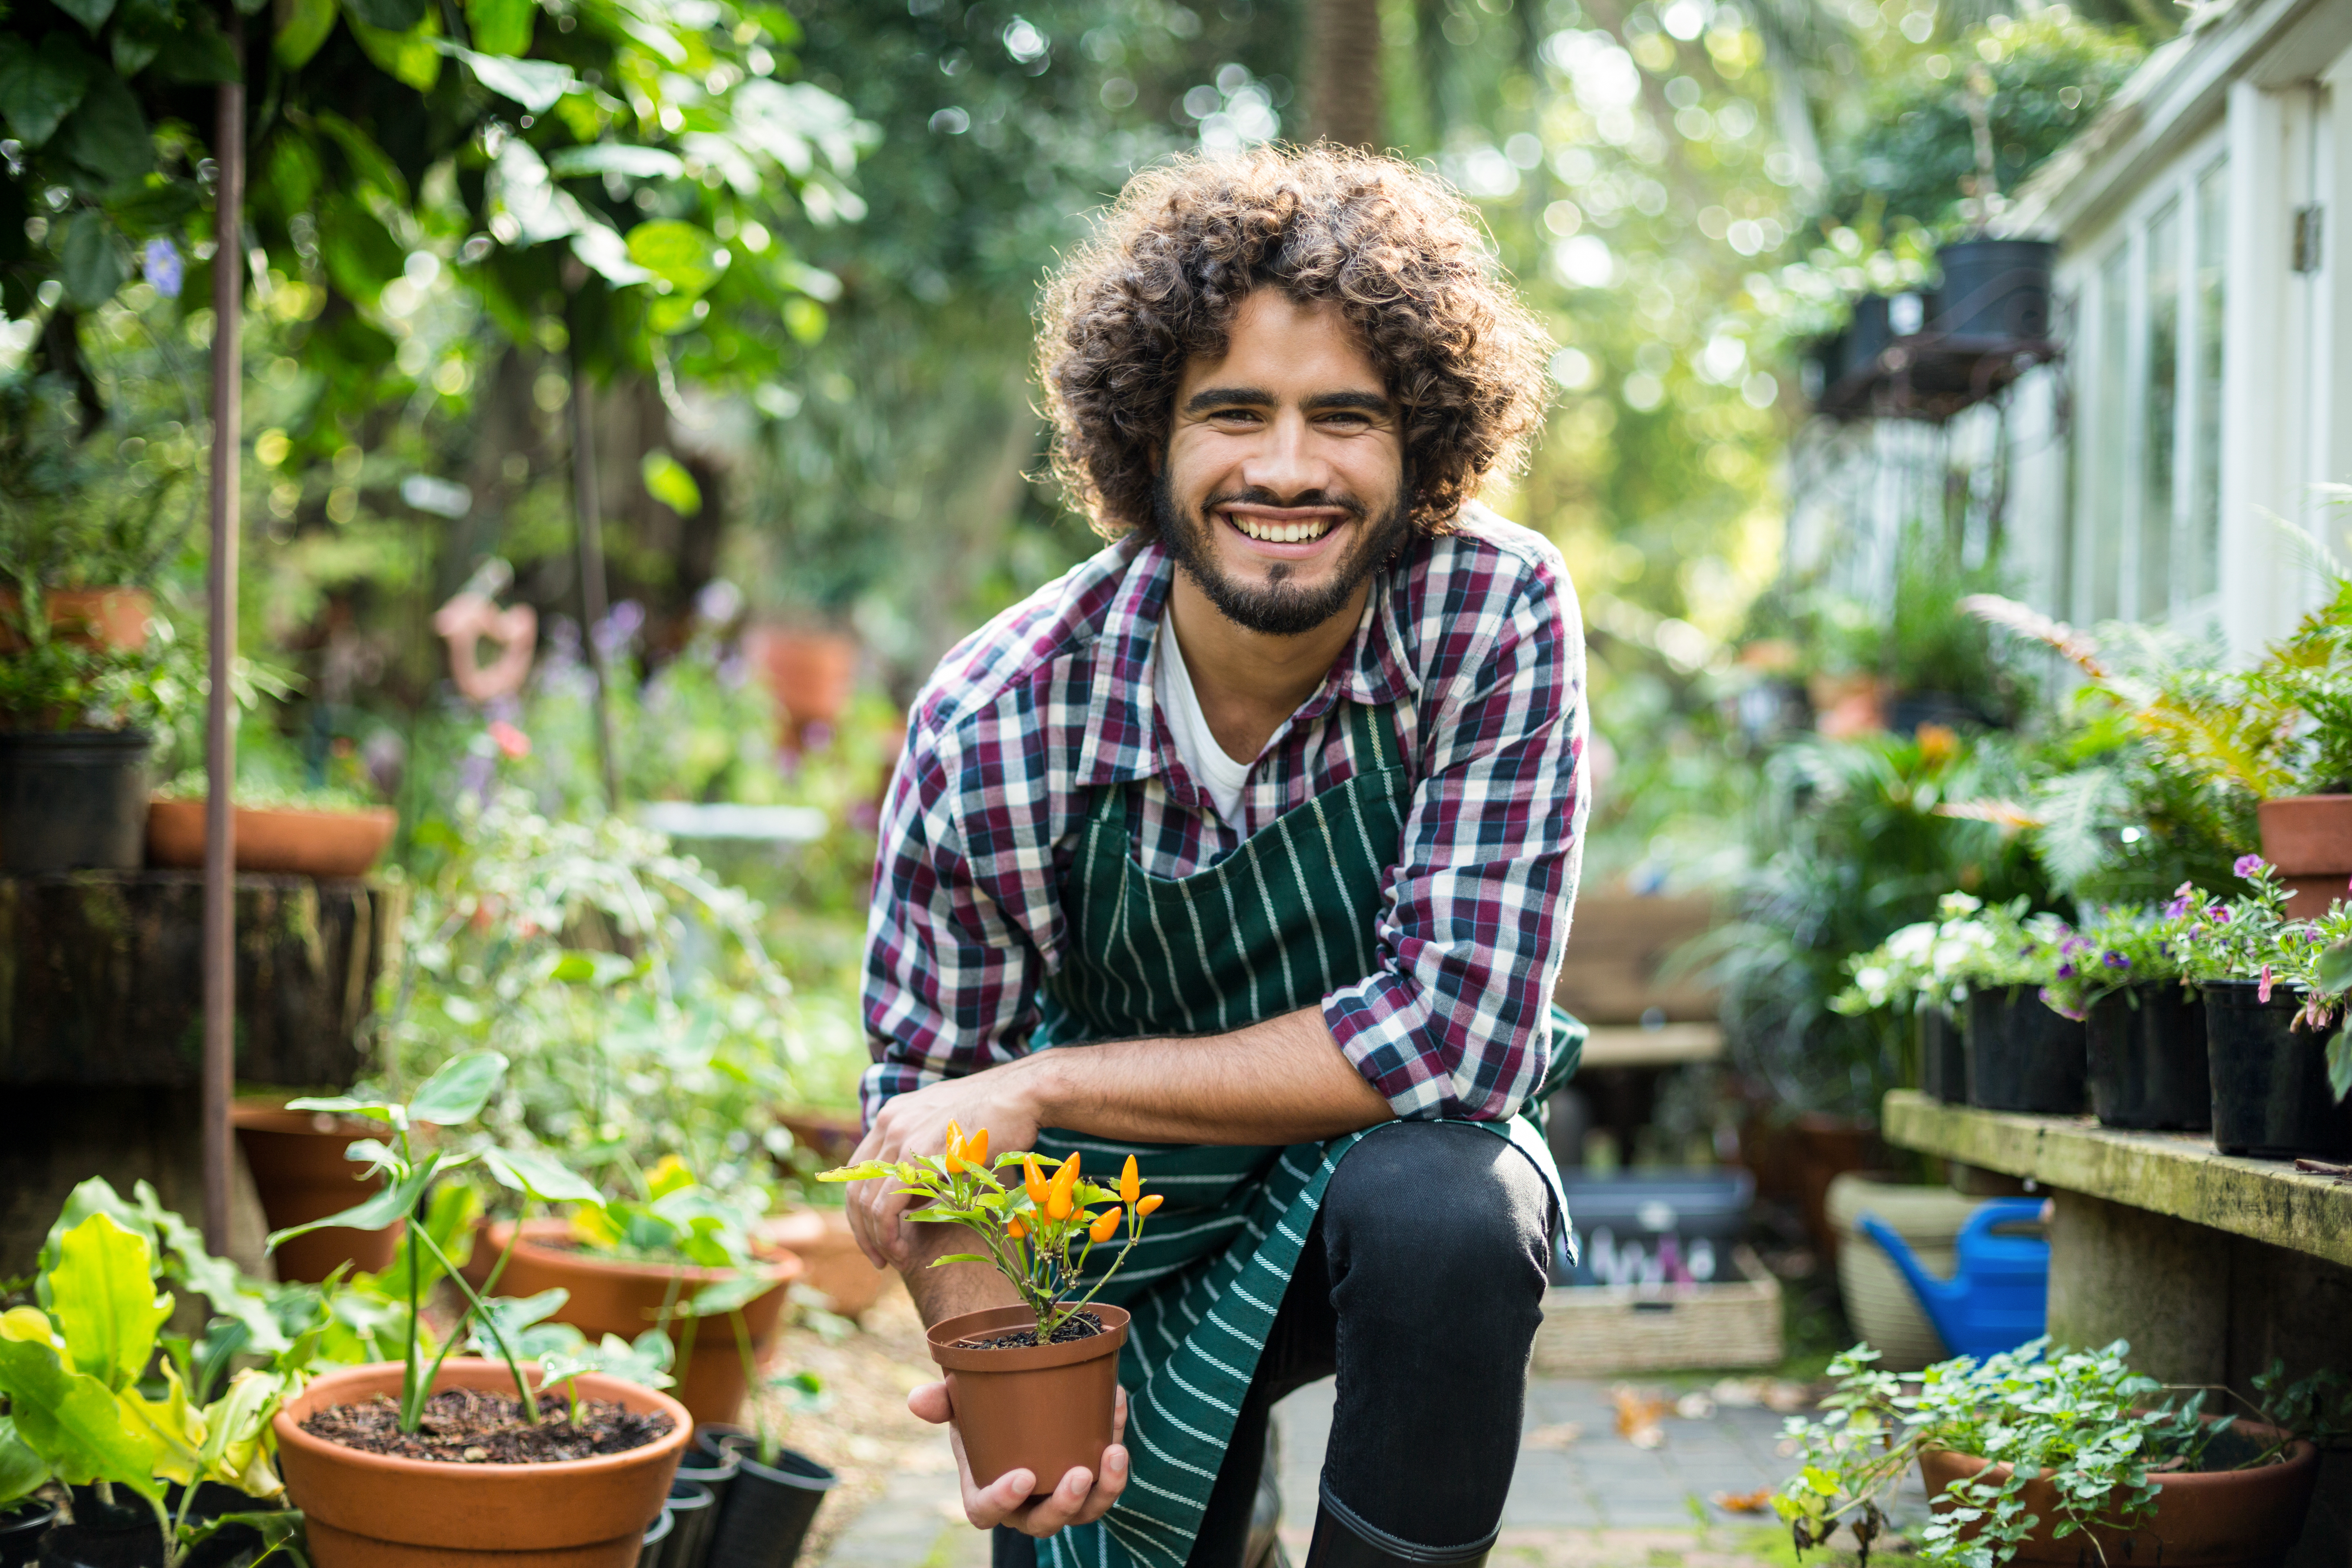 La jardinería se ha visto como una actividad de ocio pero ofrece una forma simple de aprovechar el poder curativo de la naturaleza. (Foto Prensa Libre: Shutterstock)